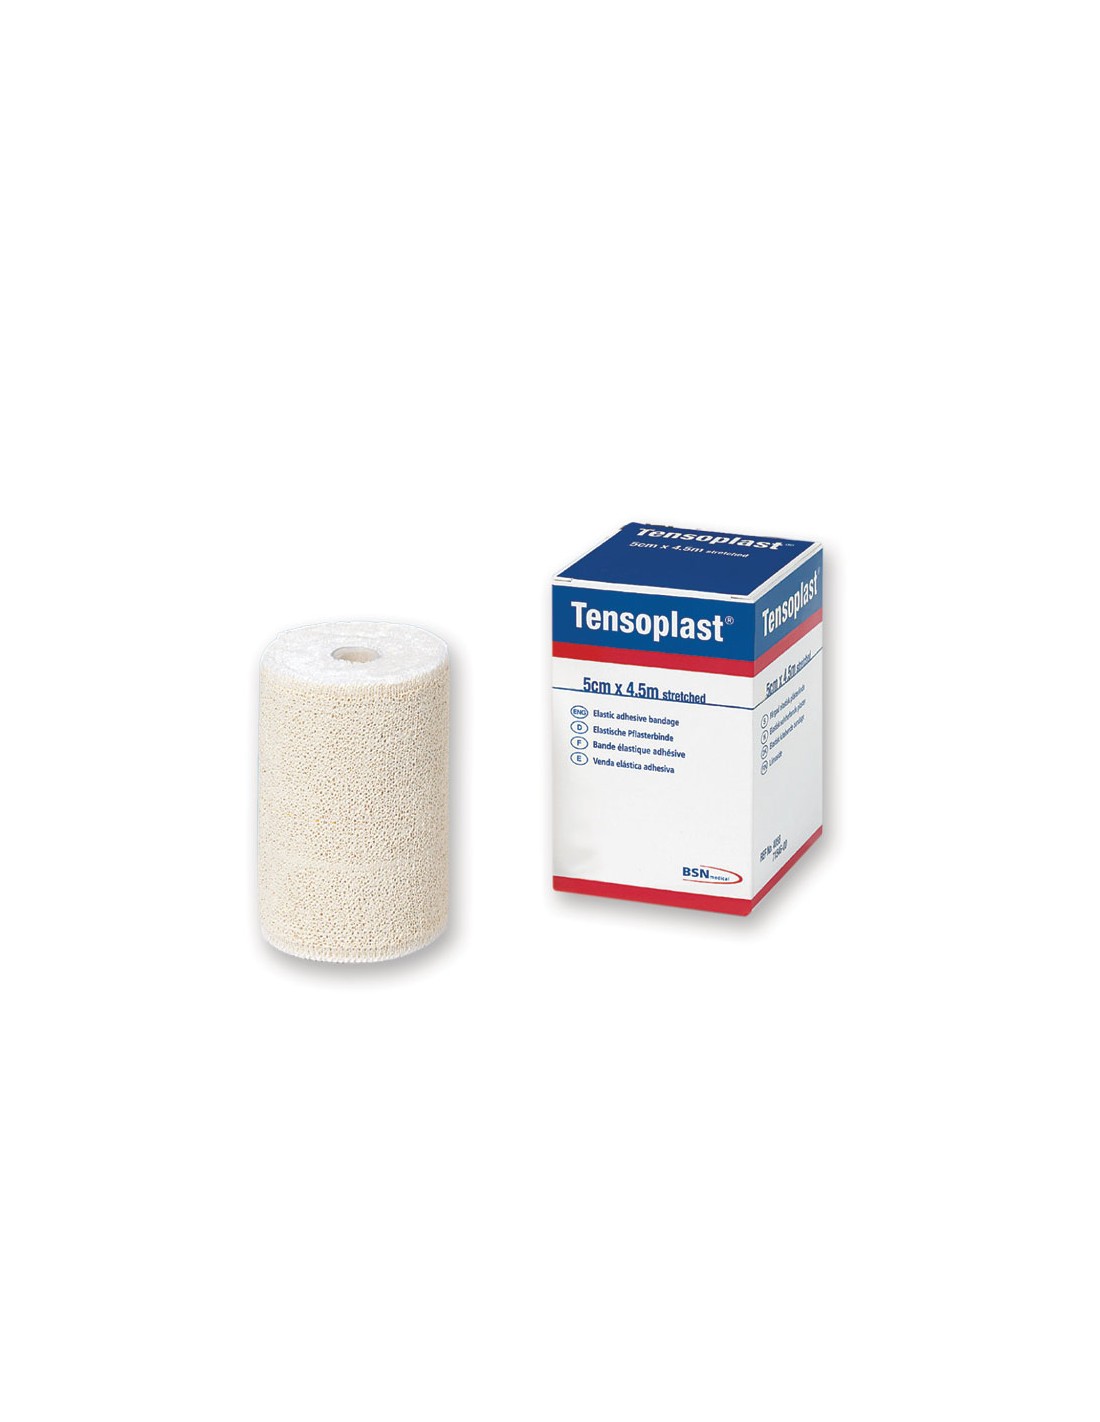 Venda elastica adhesiva - farmalastic (1 unidad 4,5 m x 5 cm)